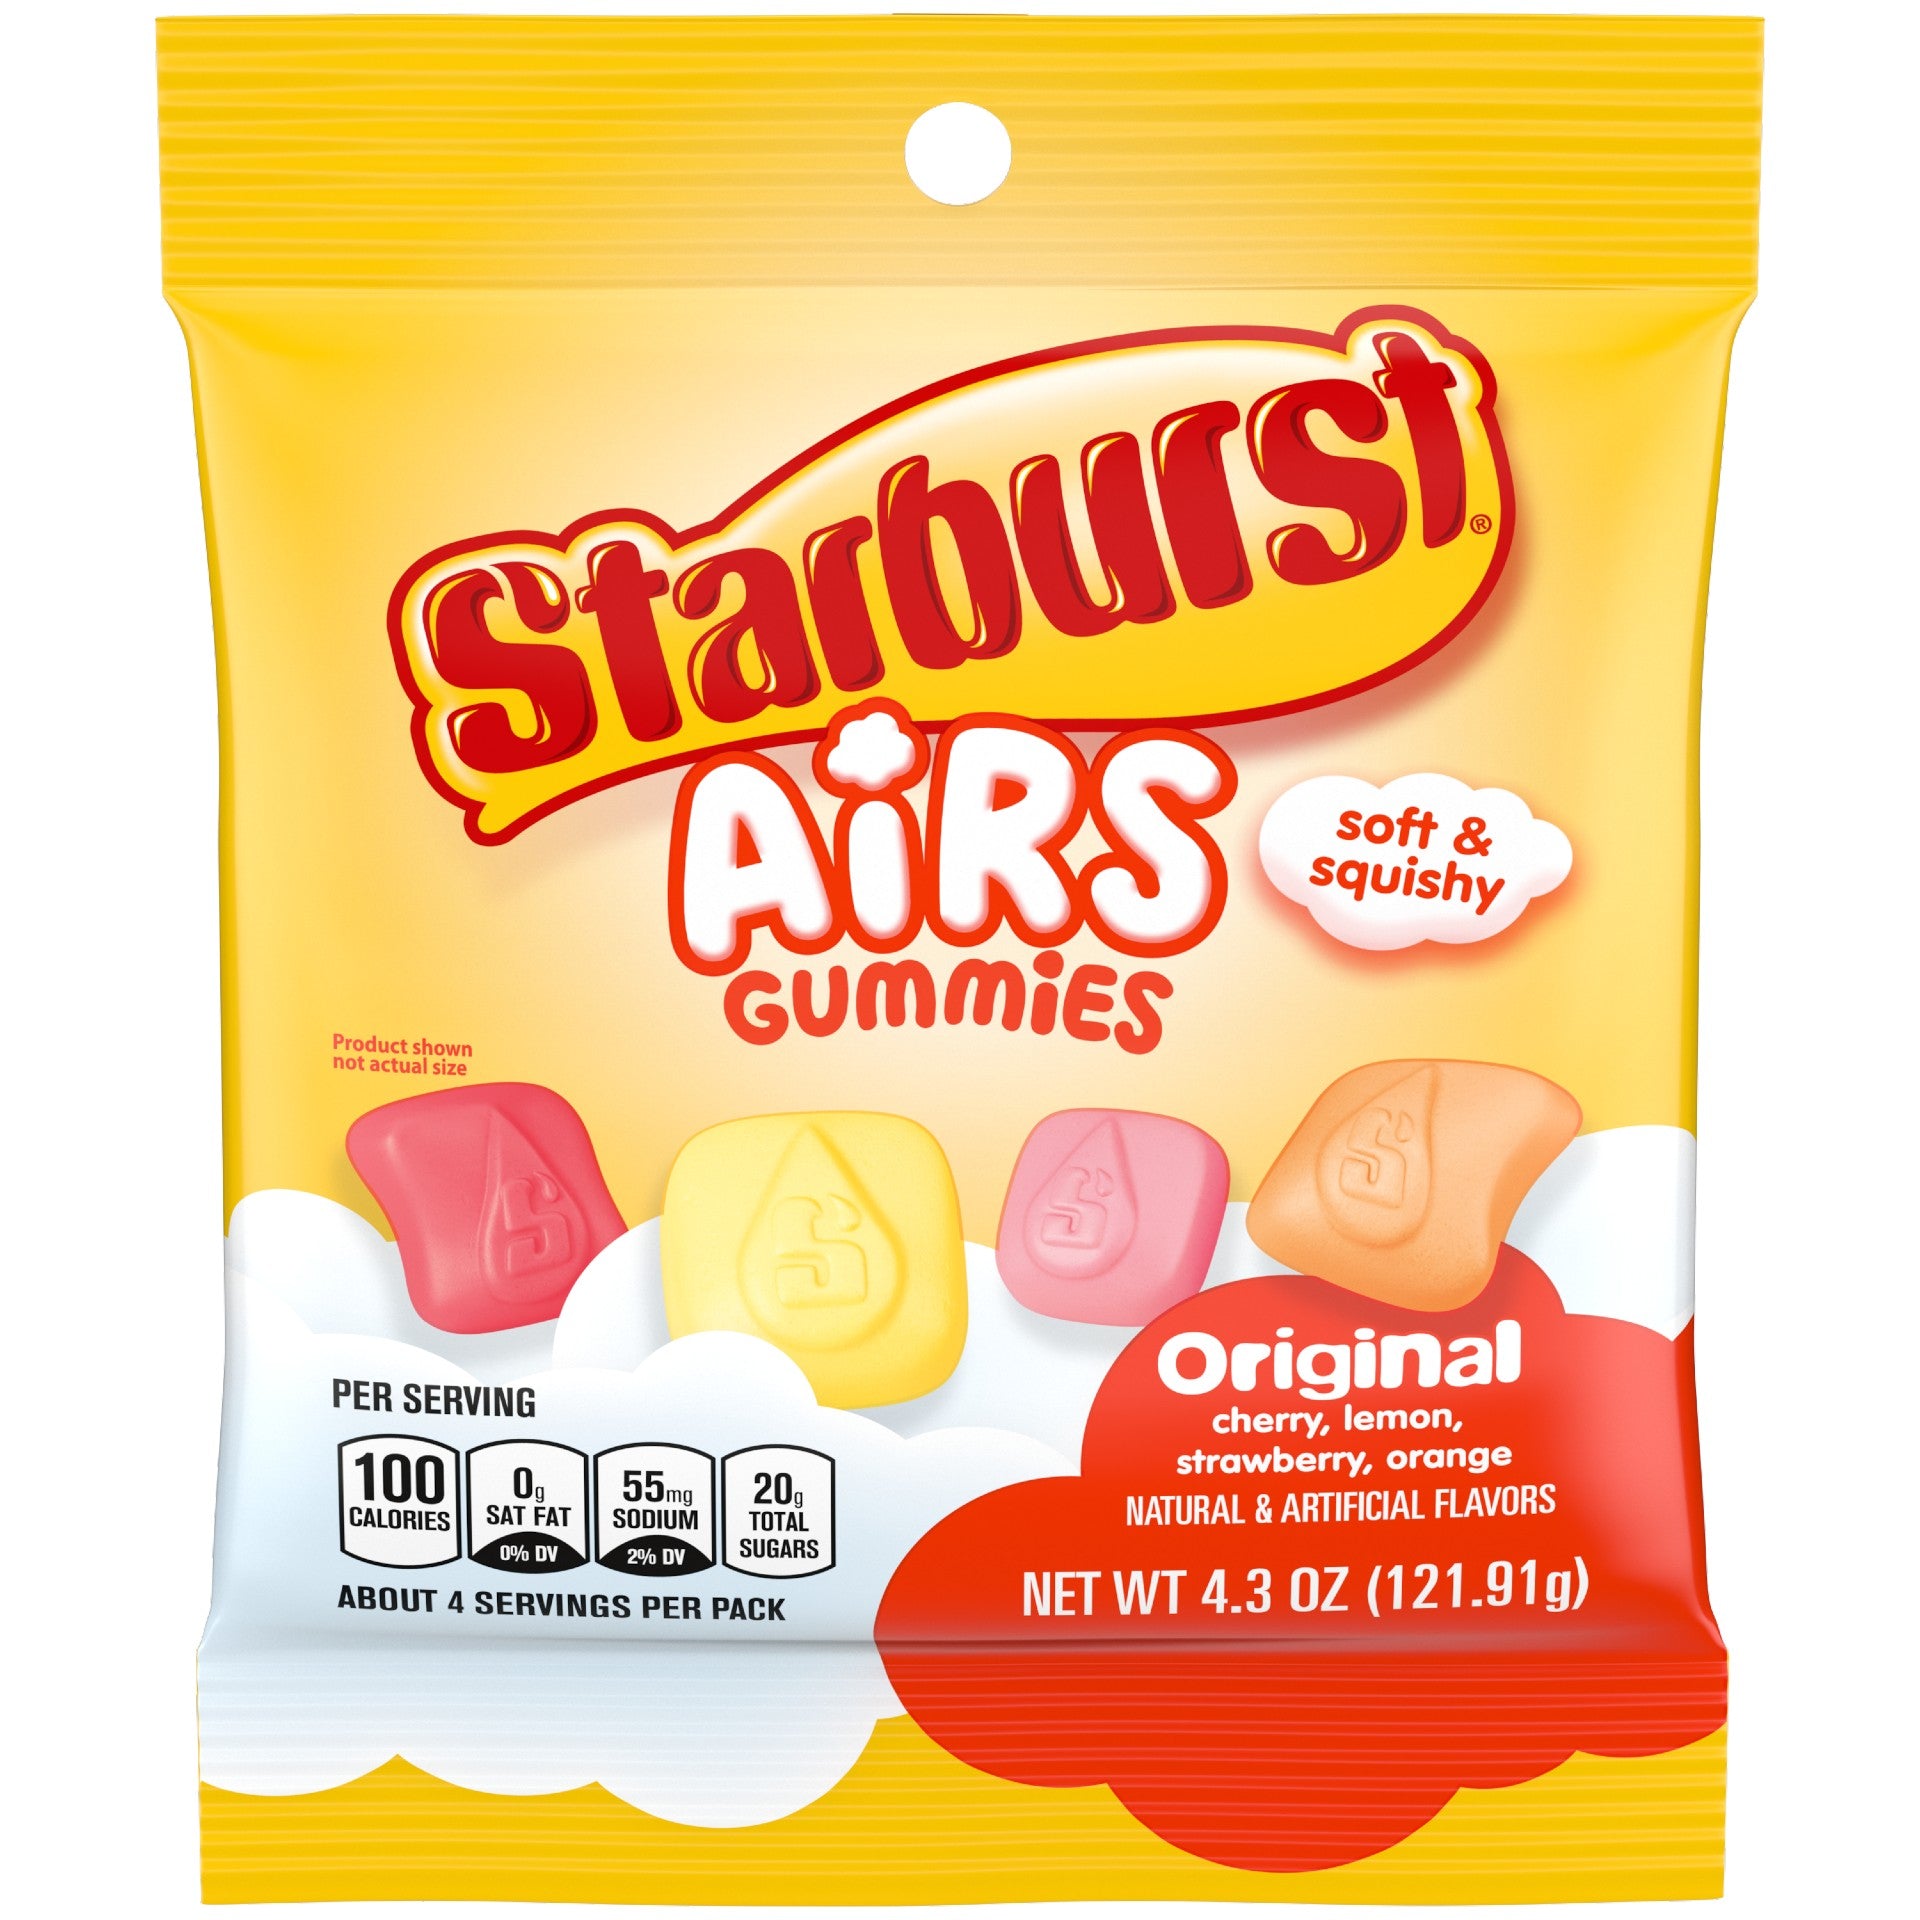 Starburst Cotton Candy 3.1 oz